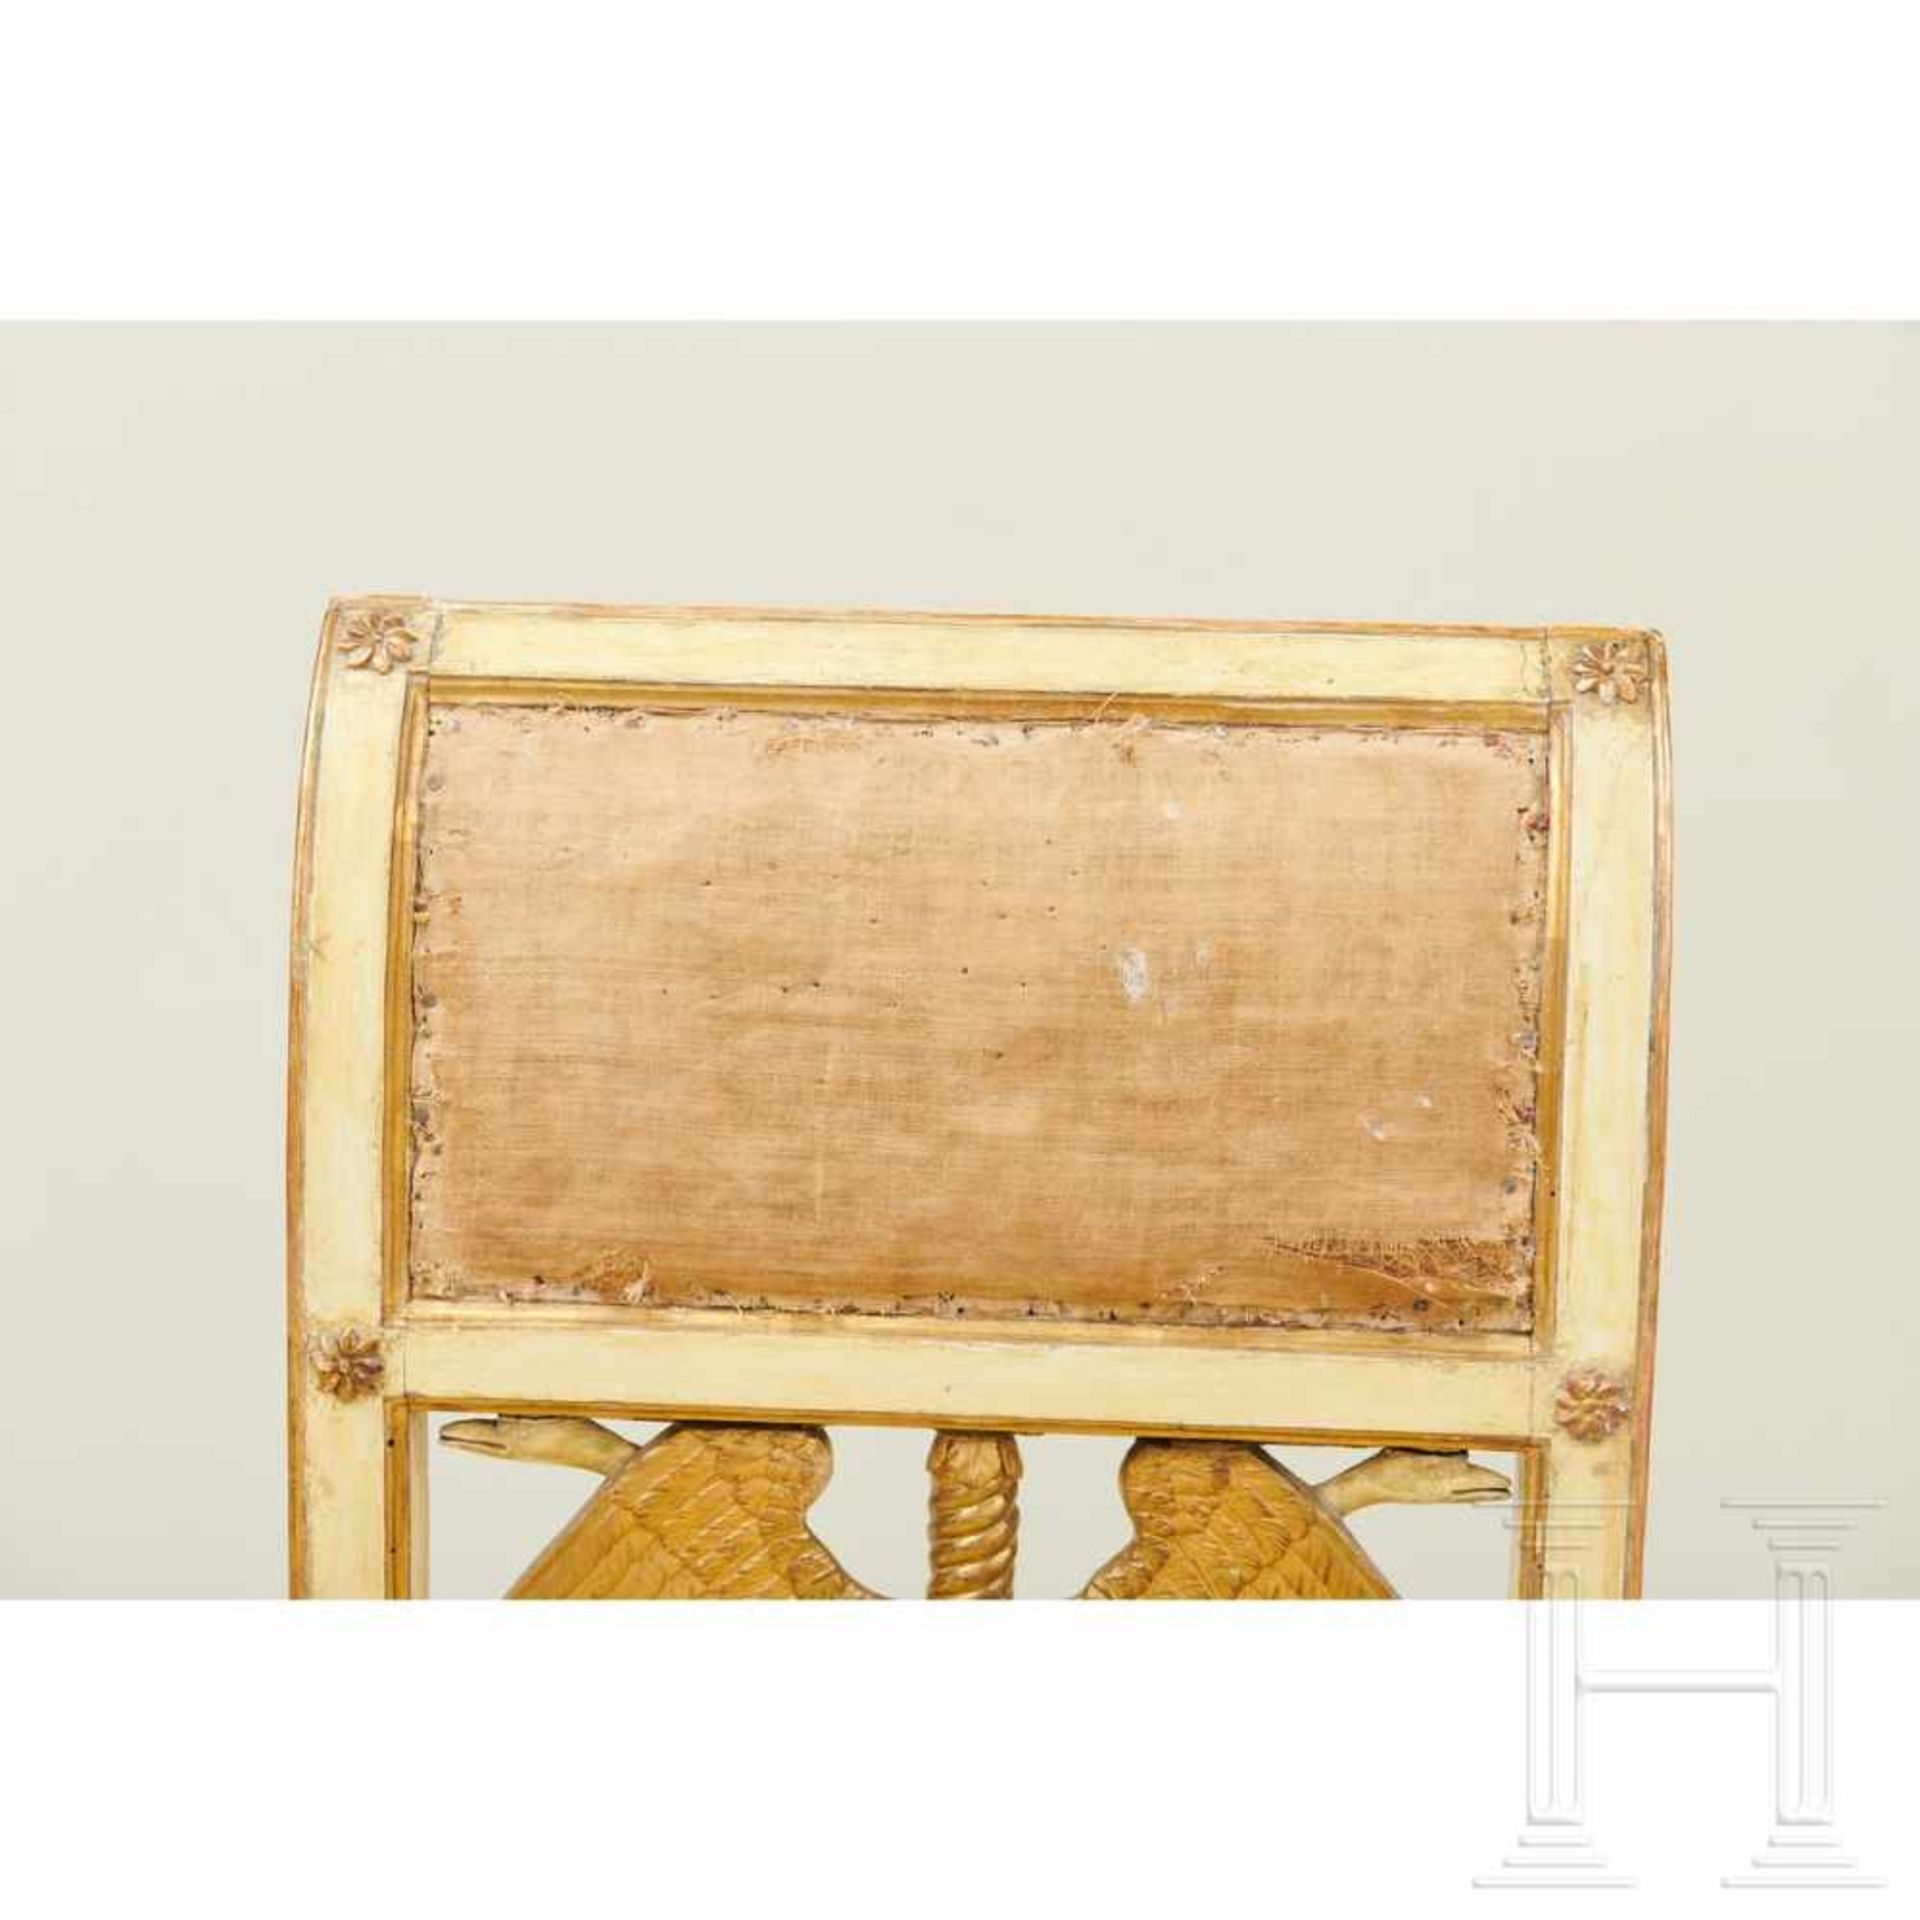 Ein Paar klassizistische Stühle, Lucca, um 1800 - Image 5 of 16